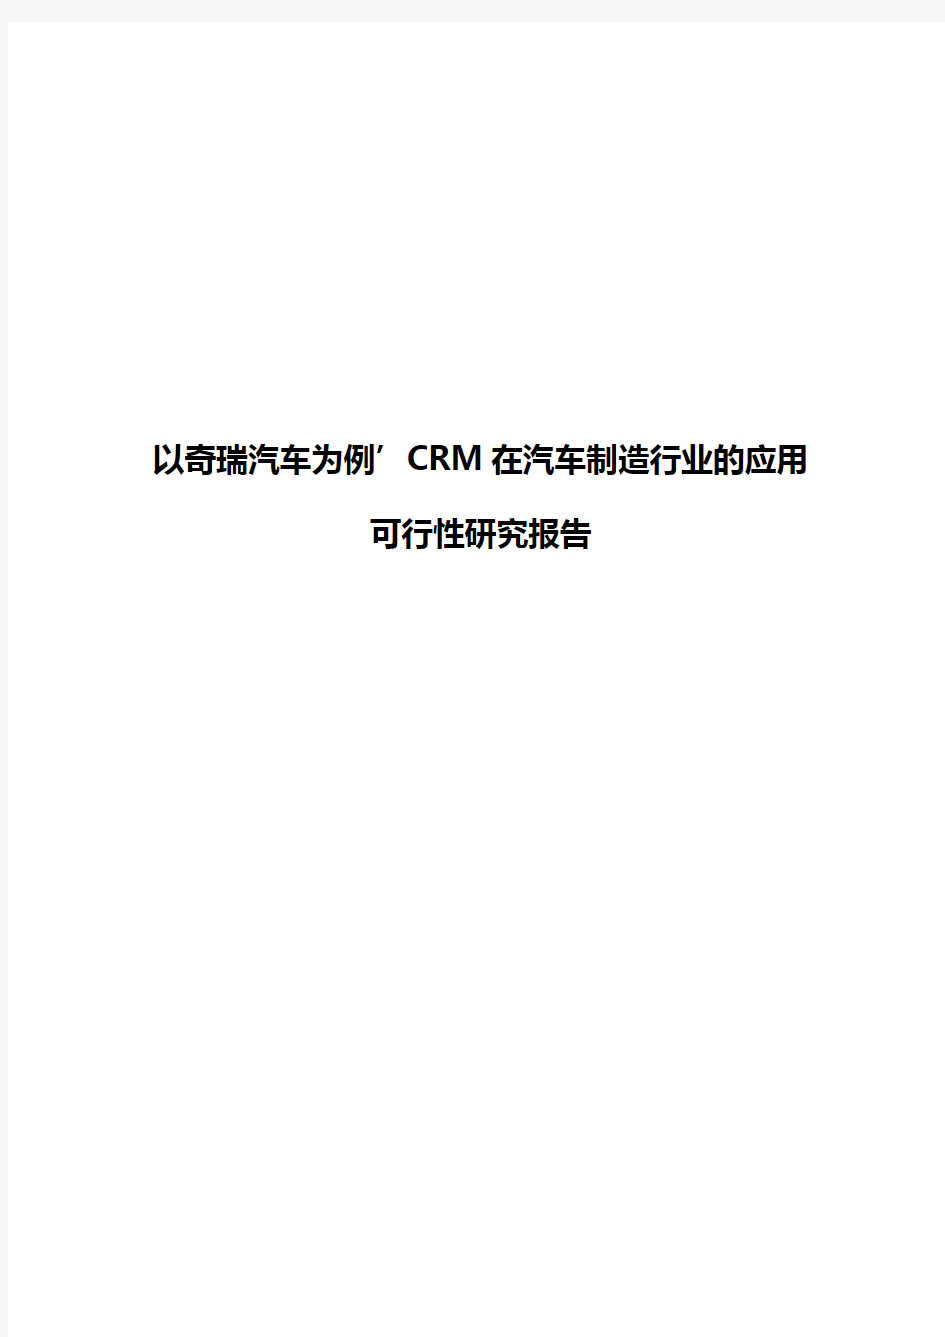 【报审完整版】以奇瑞汽车为例,CRM在汽车制造行业的应用可行性研究报告